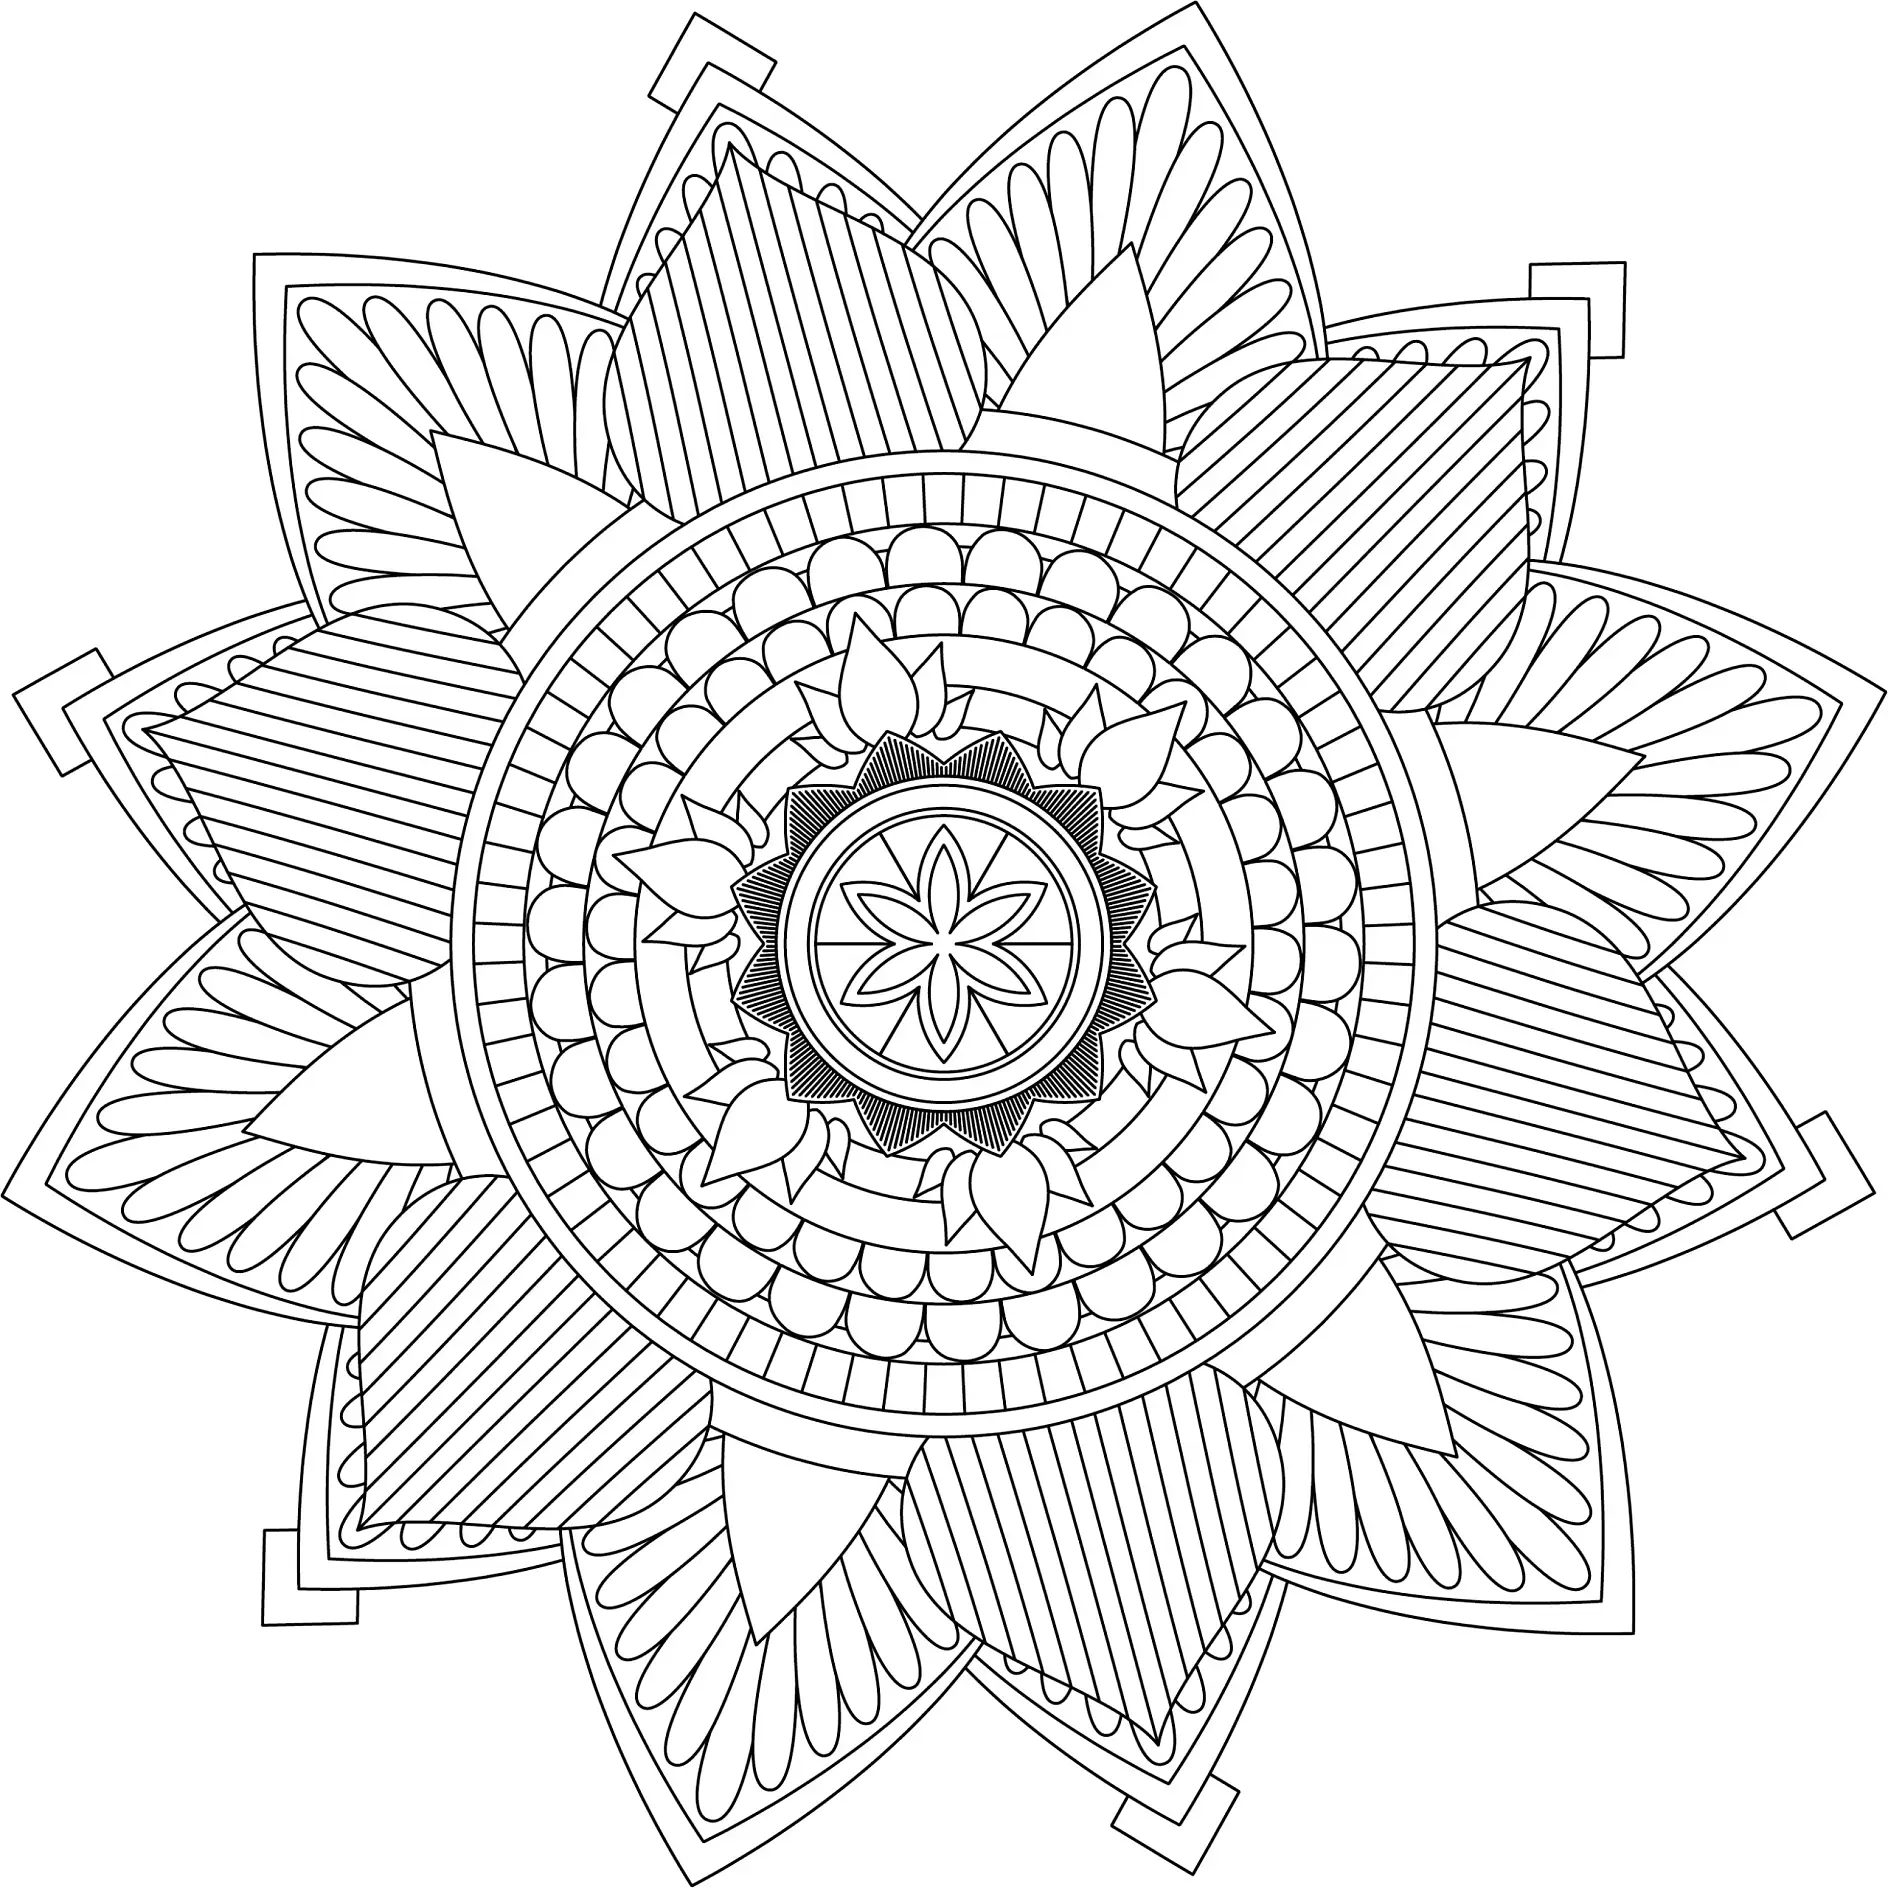 Ausmalbild Mandala mit floralen Mustern und detaillierten Blütenformen